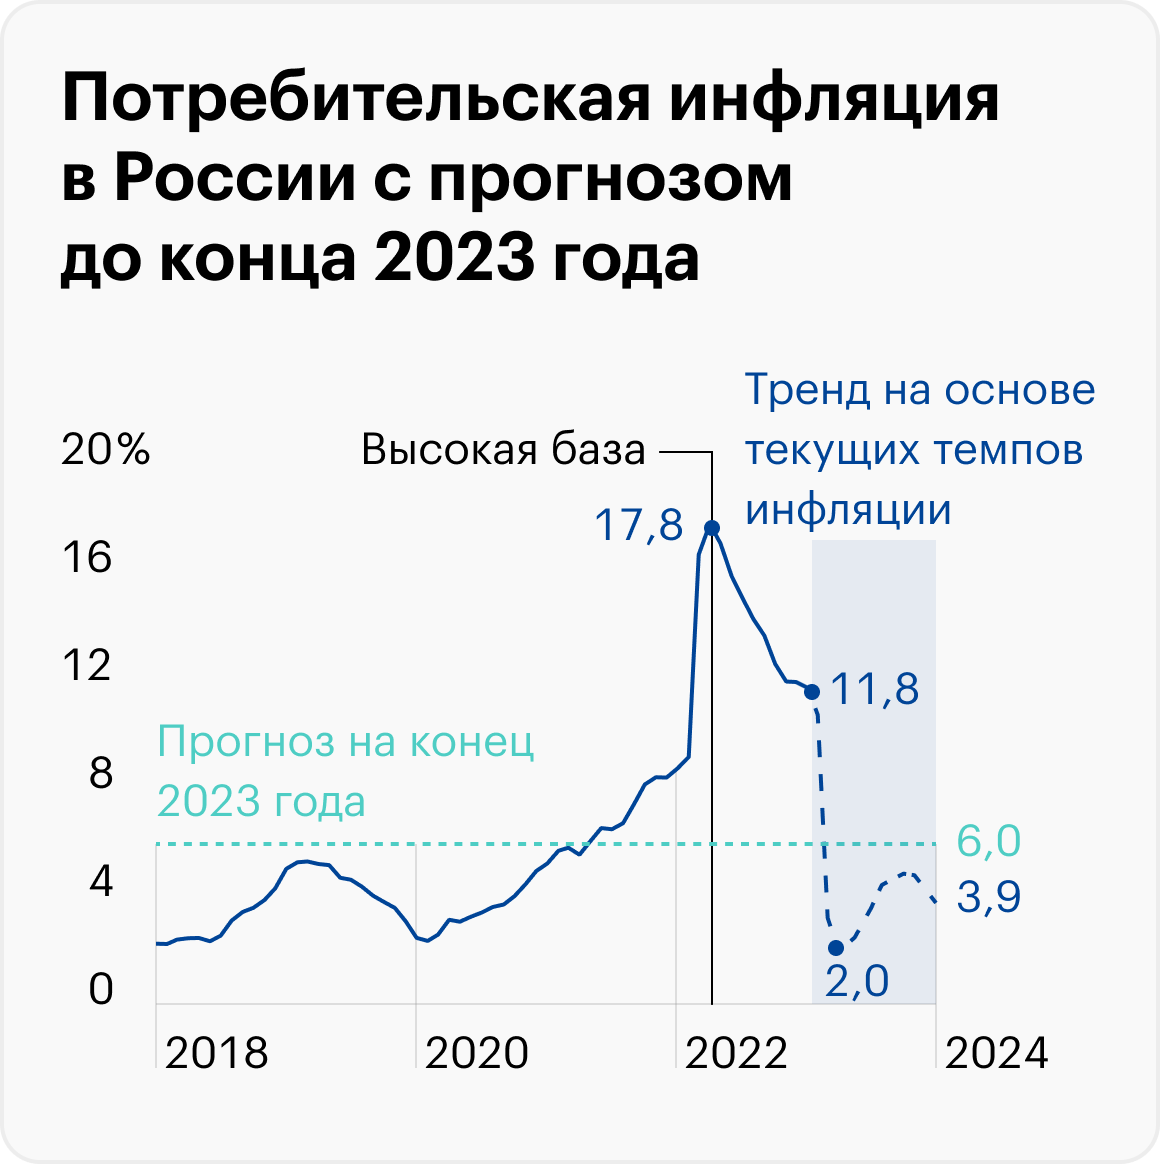 Источник: Росстат, данные Банка России по инфляции и прогноз, расчеты автора